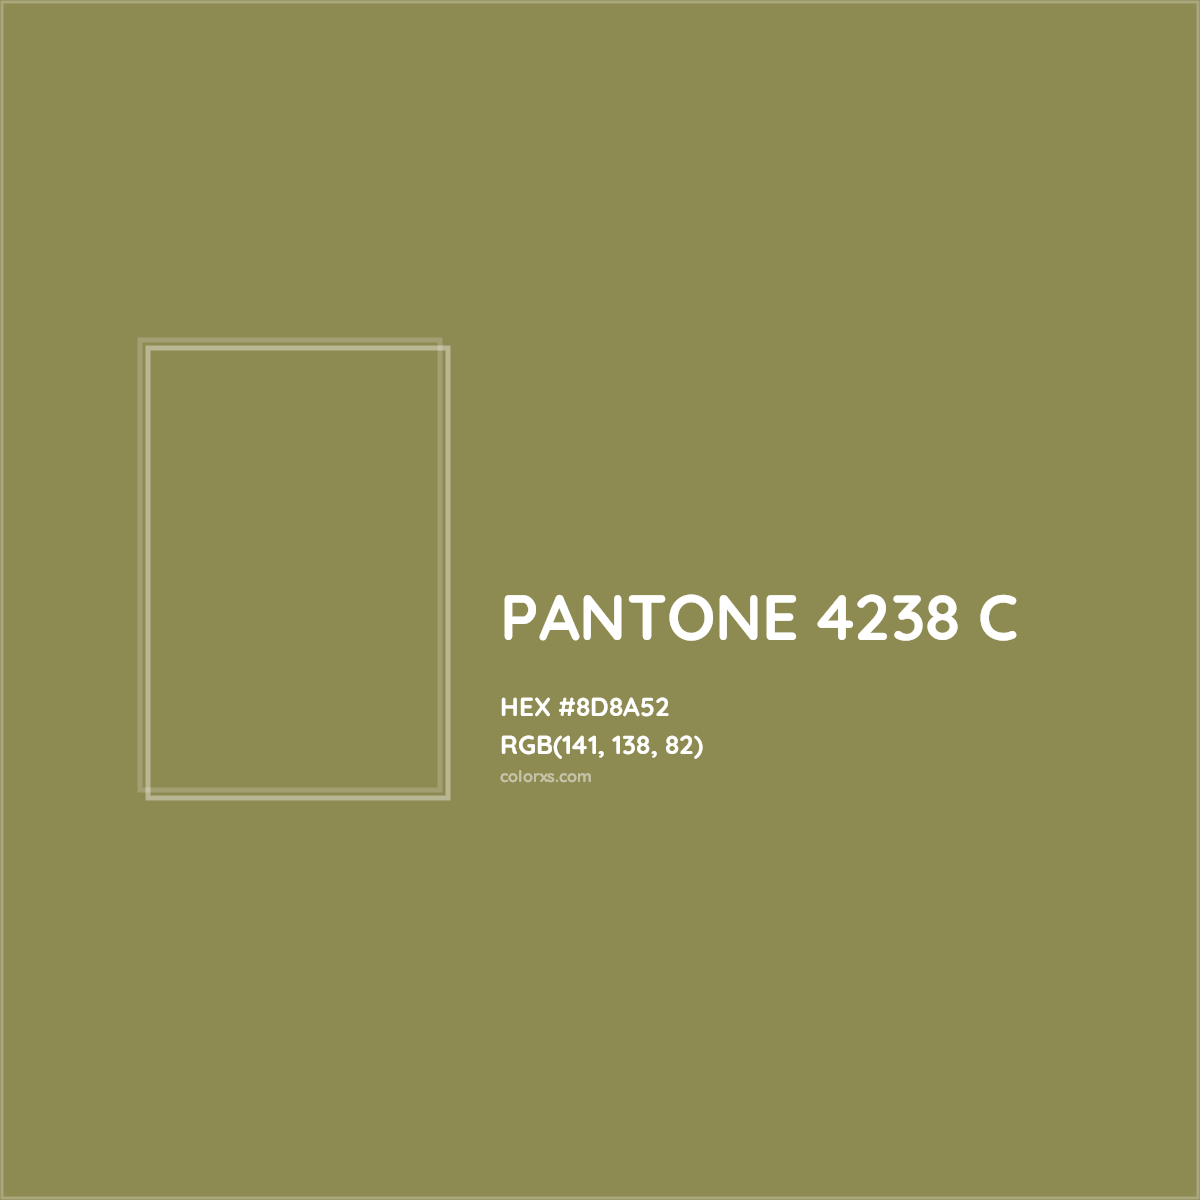 HEX #8D8A52 PANTONE 4238 C CMS Pantone PMS - Color Code